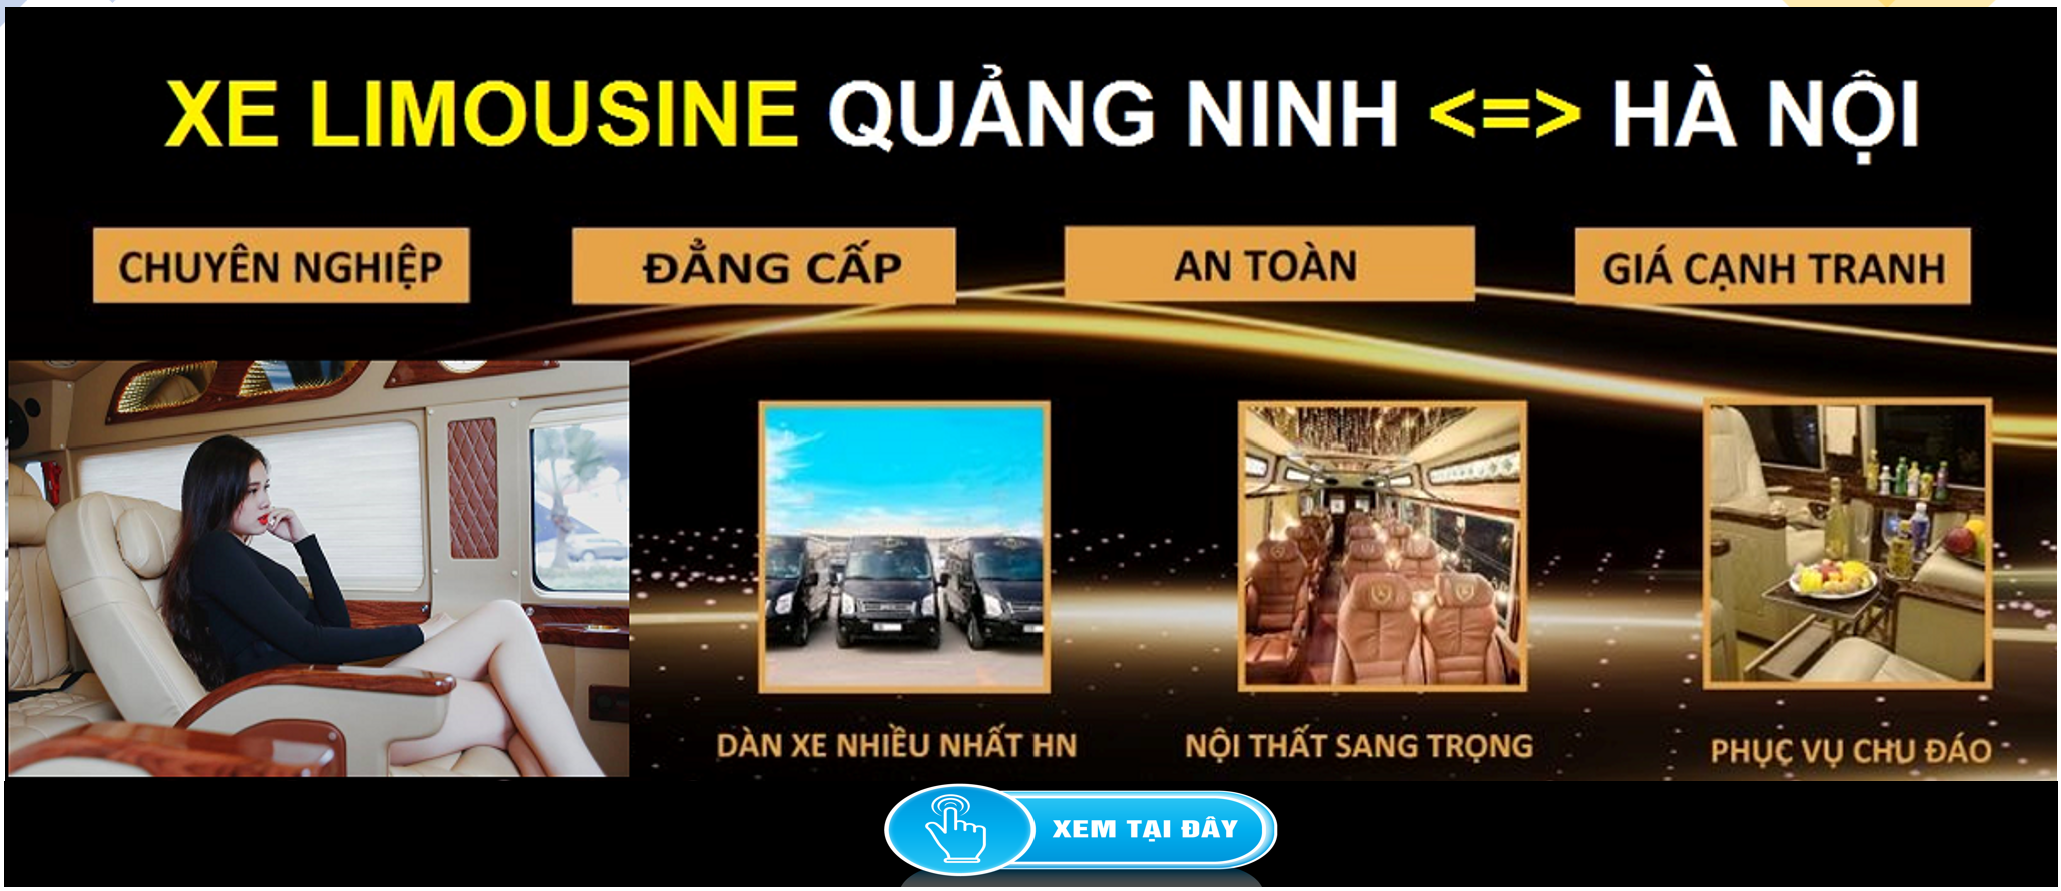 Xe Limousine Ha Noi Quang Ninh dua don tai nha 1d - Địa chỉ Showroom xe VinFast và Đại lý xe VinFast chính hãng trên Toàn Quốc